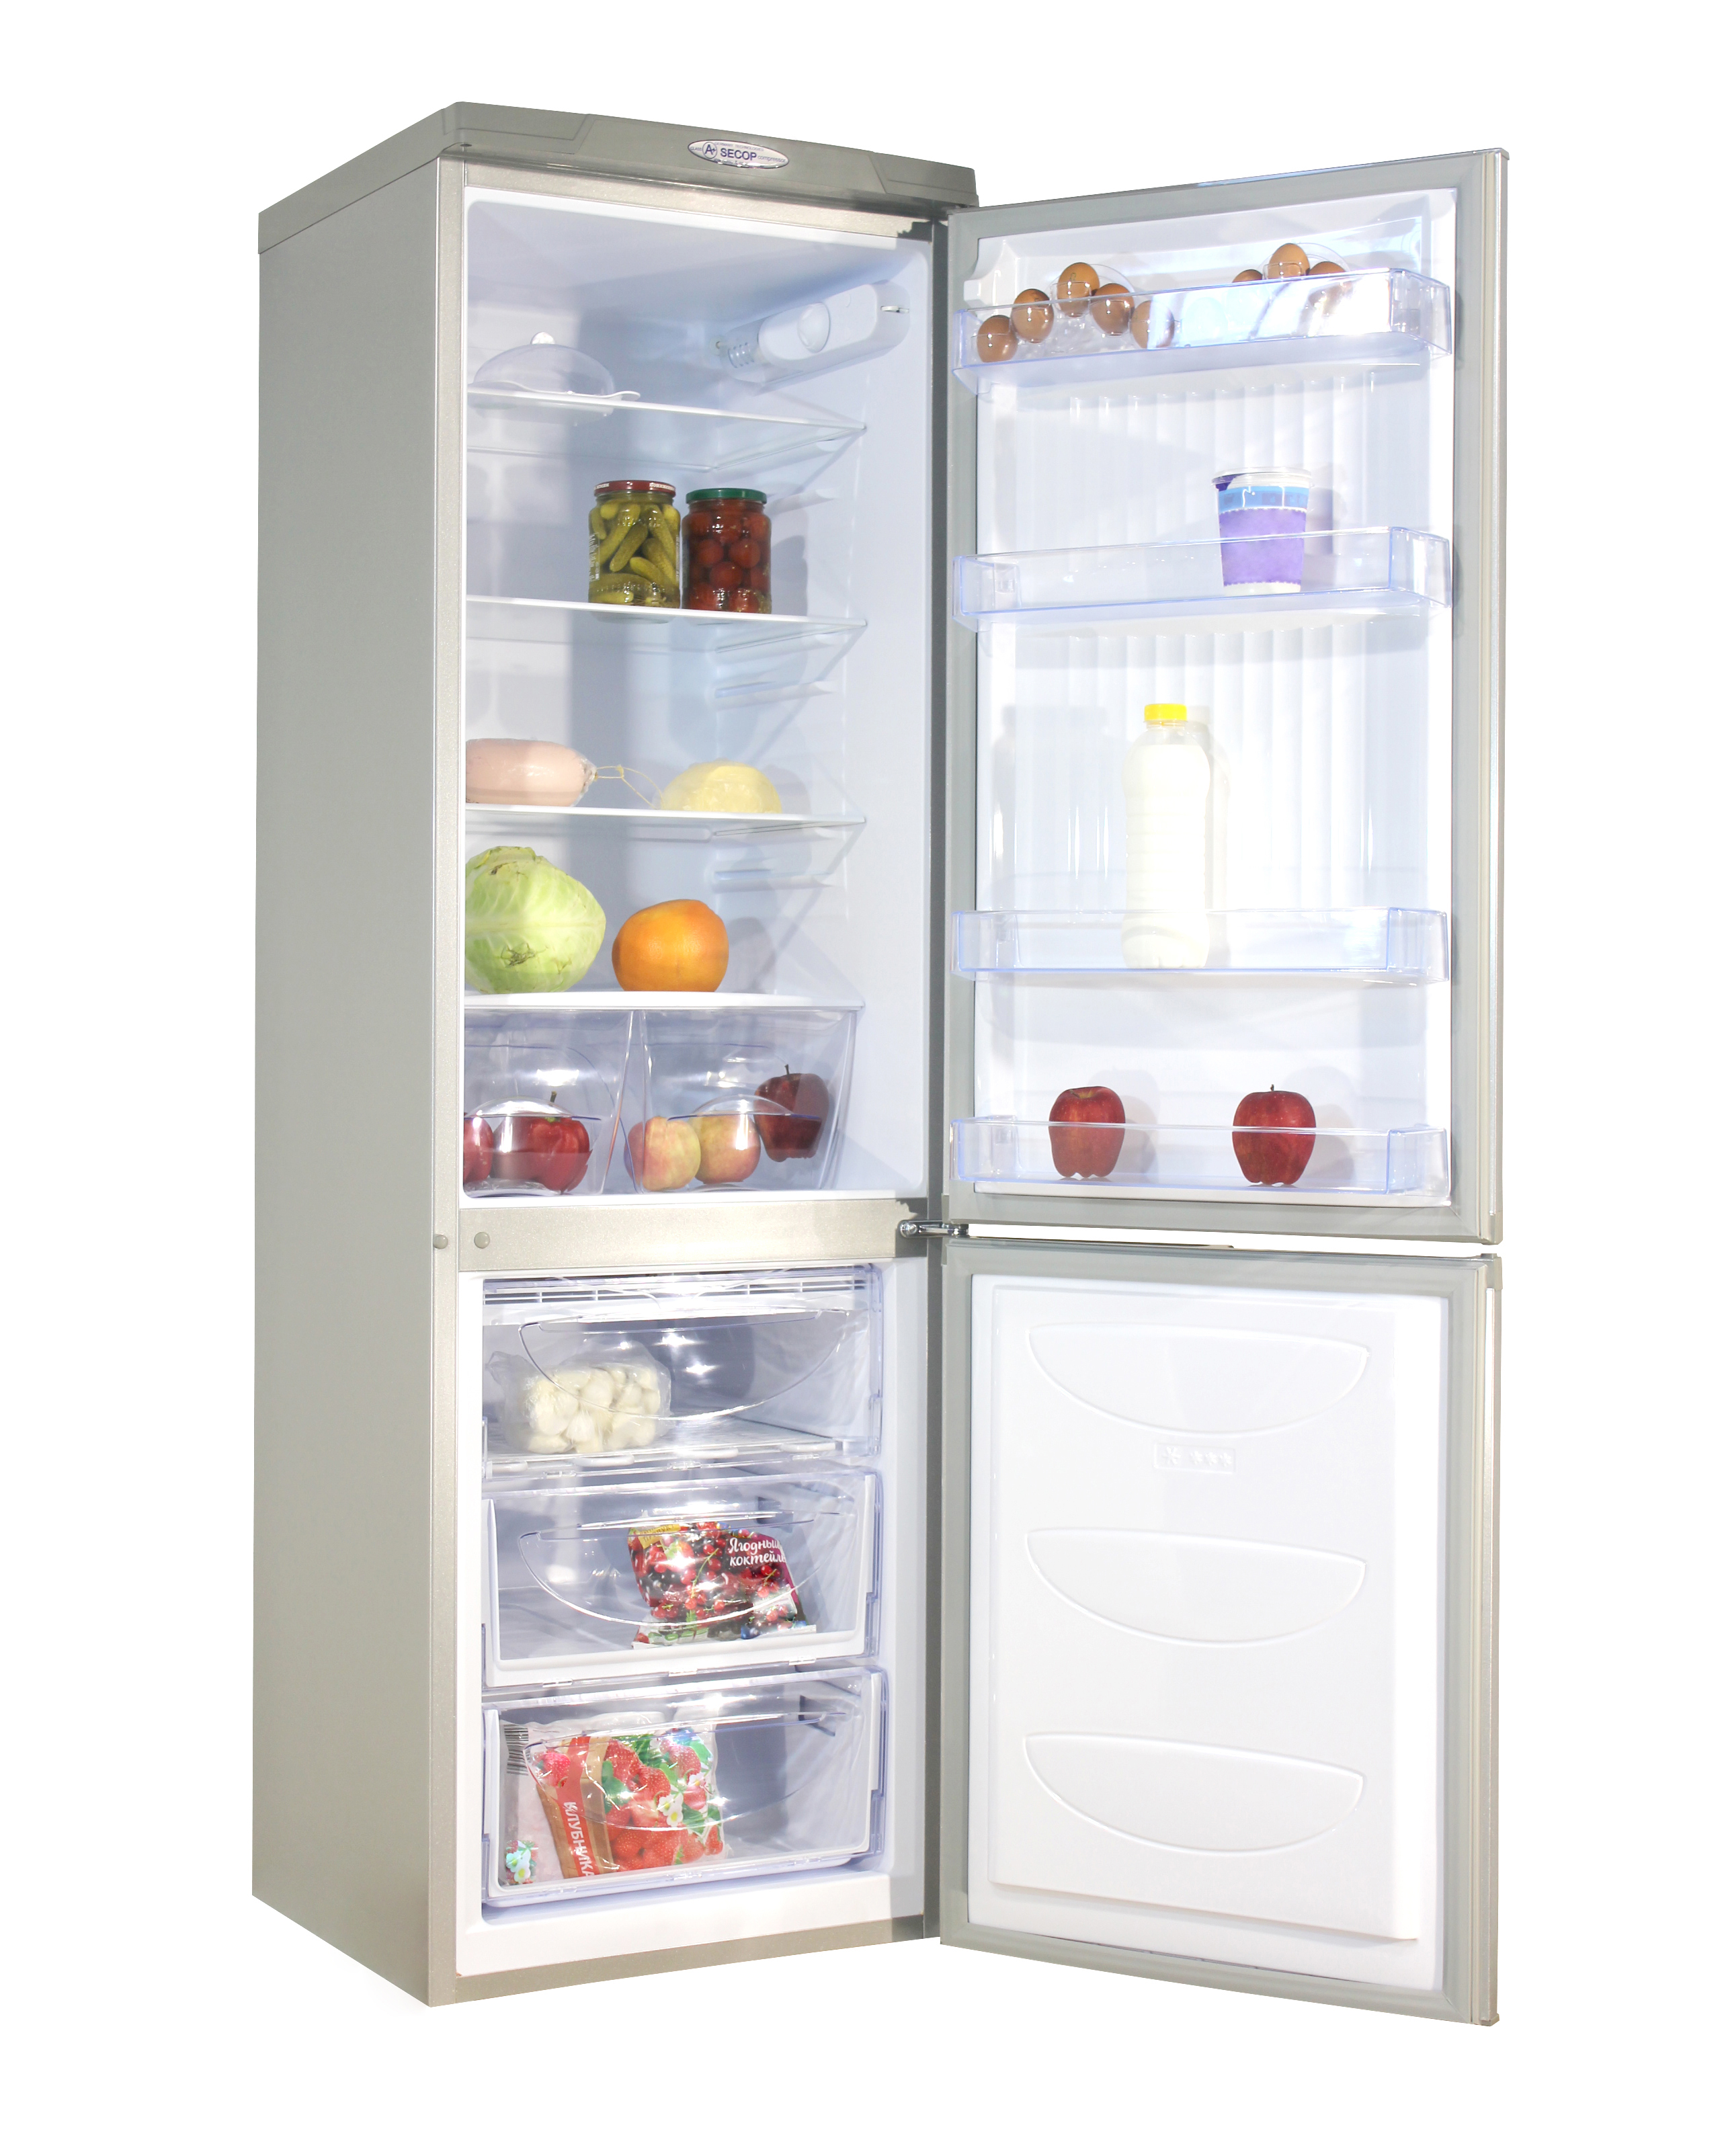 Купить холодильник в сочи. Холодильник don r-291 mi. Холодильник don r 291 металлик искристый. Холодильник don r-291 ng нерж.сталь. Холодильник don r-290 ng.